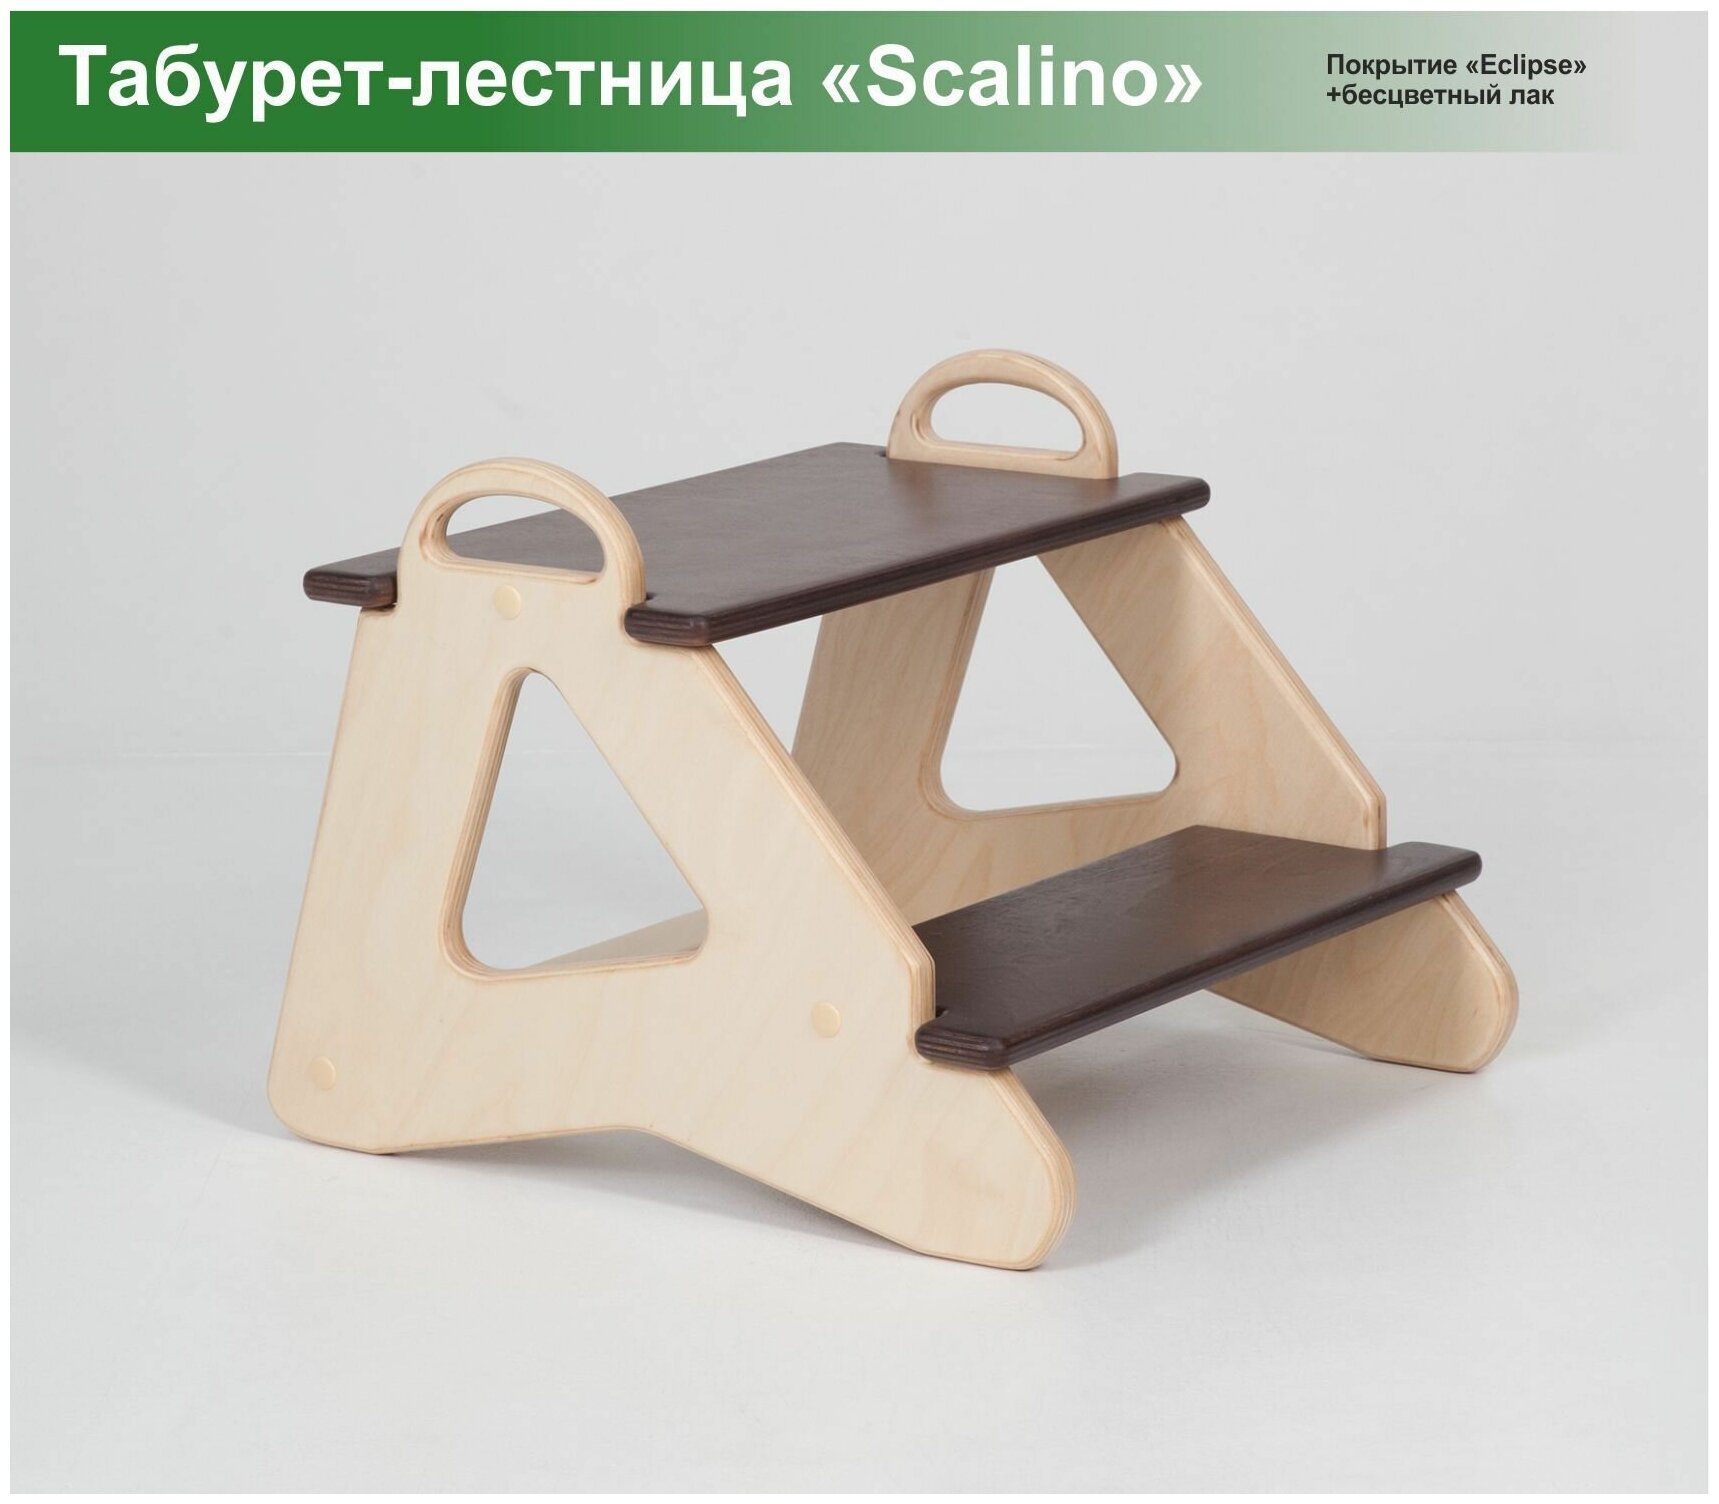 Табурет стремянка детская Scalino, для кухни, подставка под ноги. Шлифованный, без покрытия. - фотография № 11